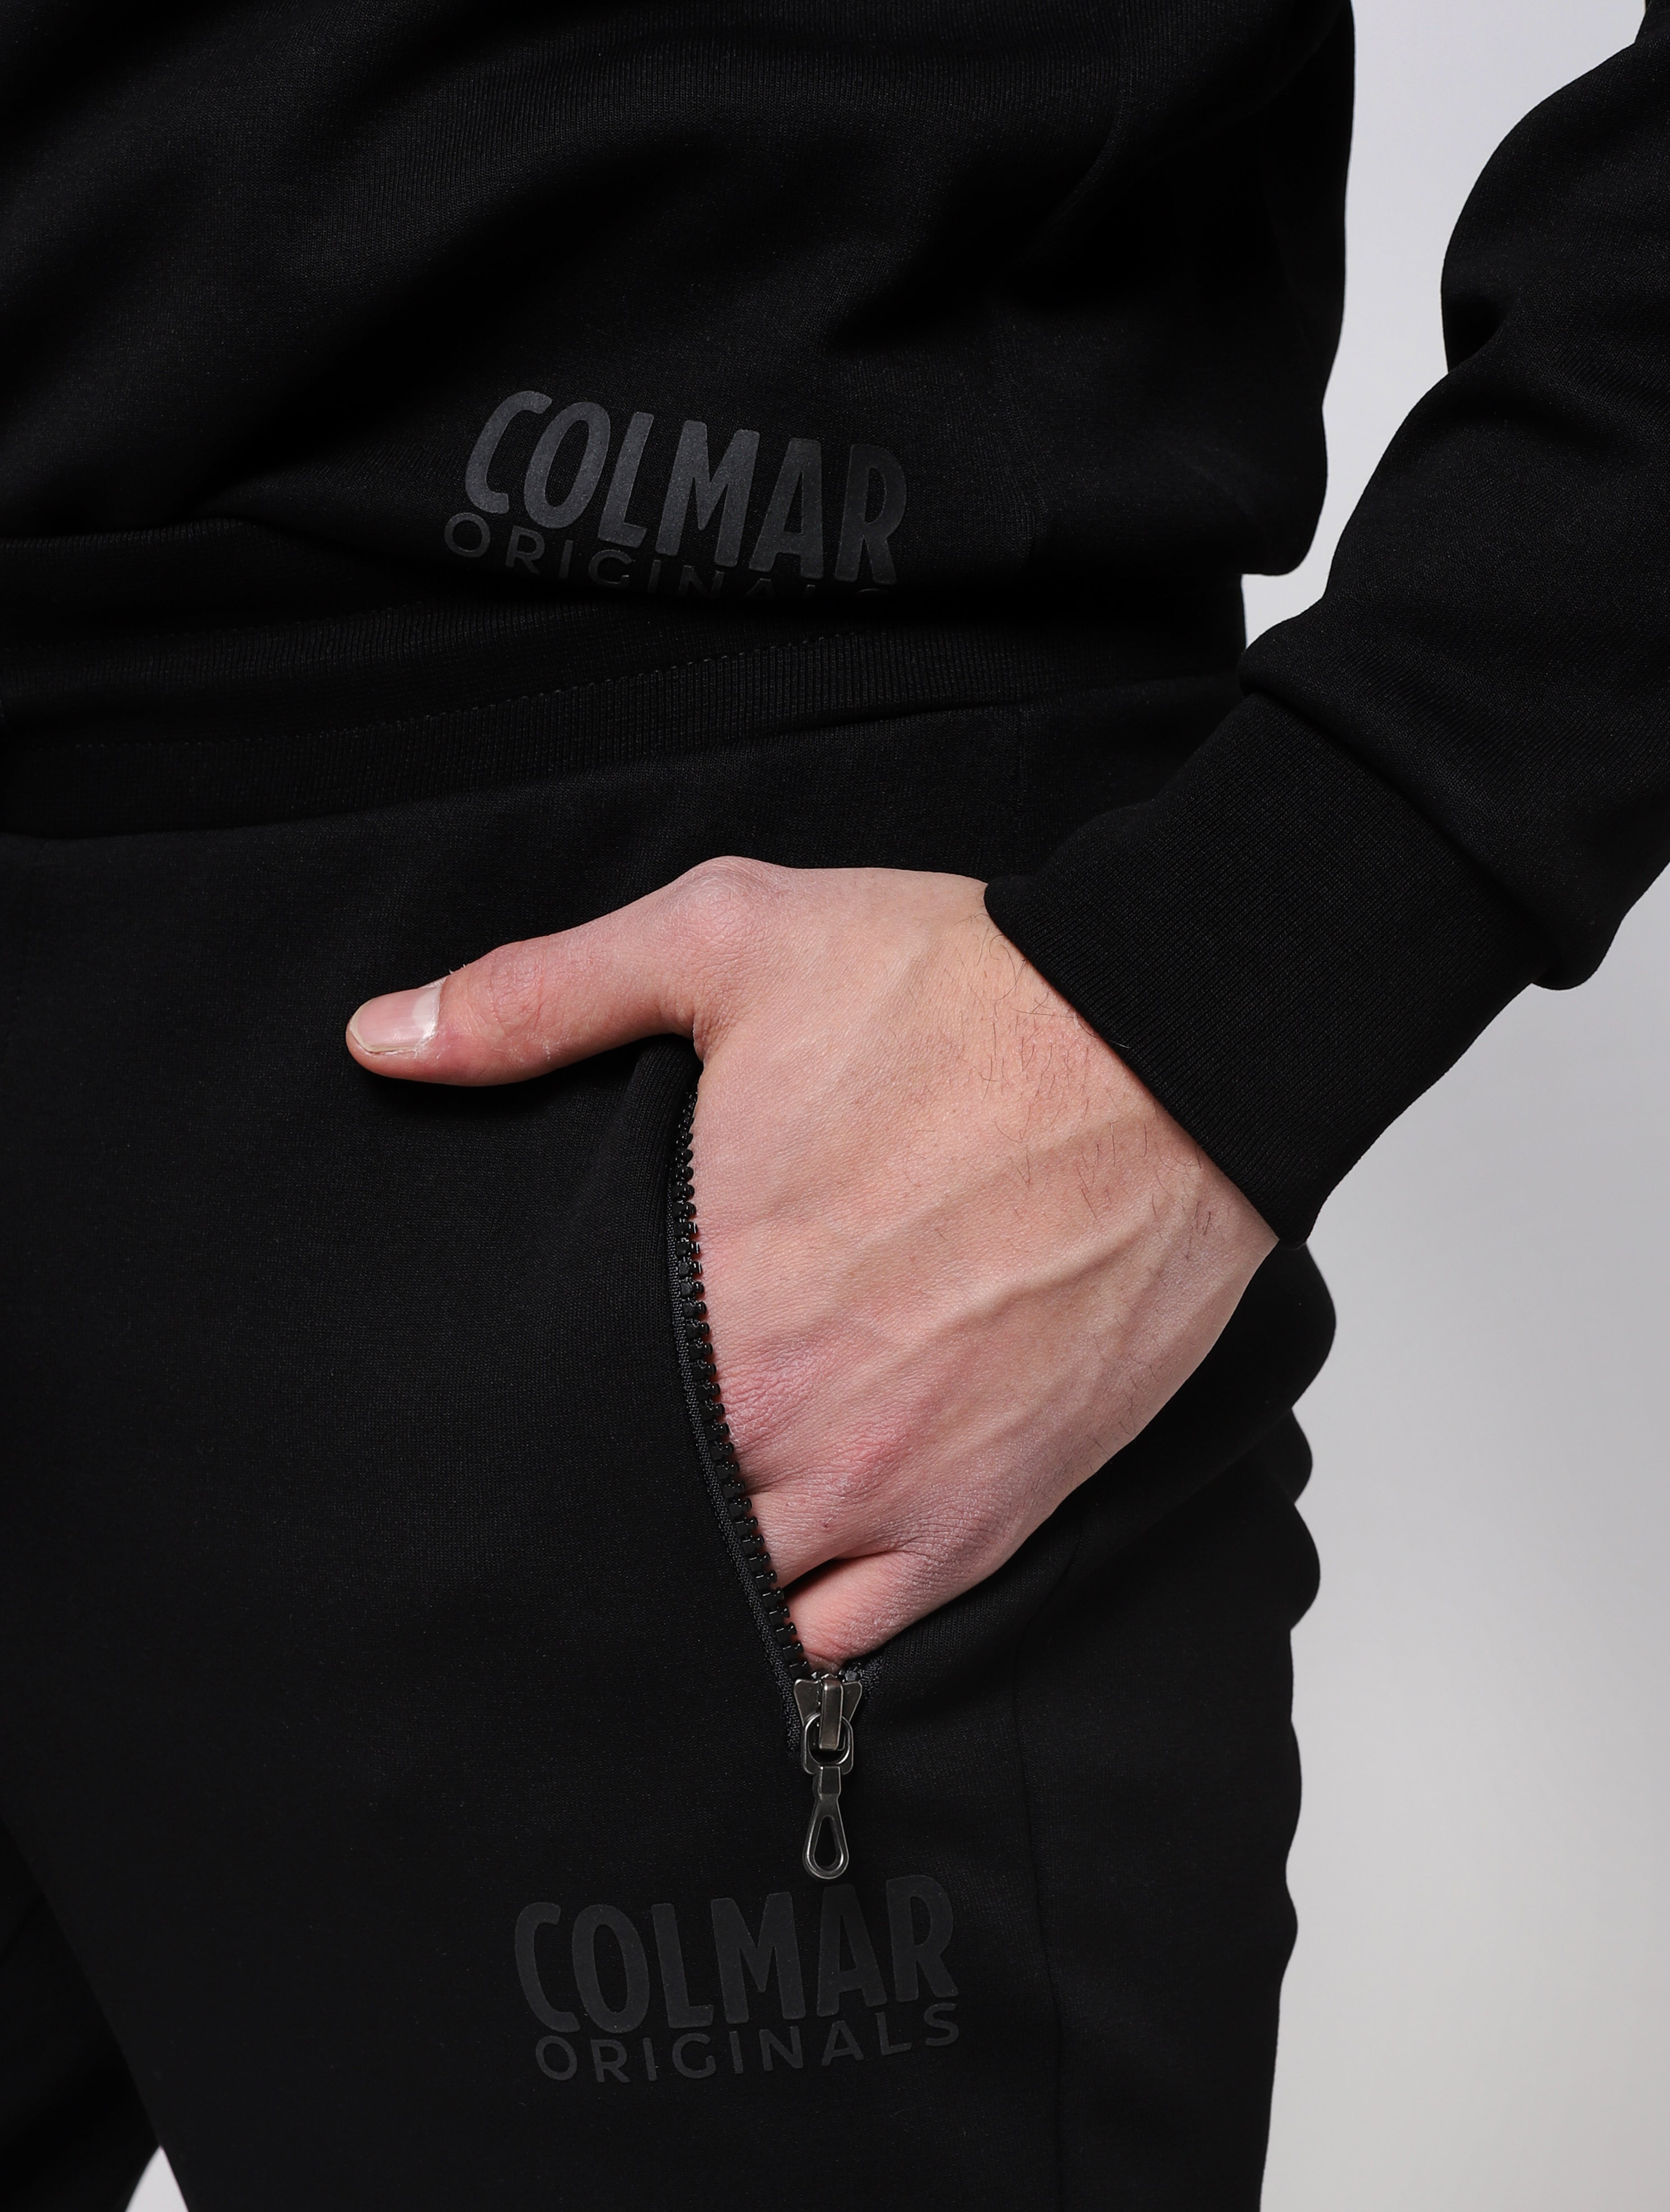 Maglia con girocolloe polsini fondo e collo elasticizzati in maglia a costine abbinabile ai pantaloni in felpa nel tessuto 8xq, colmar originals in rilievo in basso a sinistra -  nero man  - 8